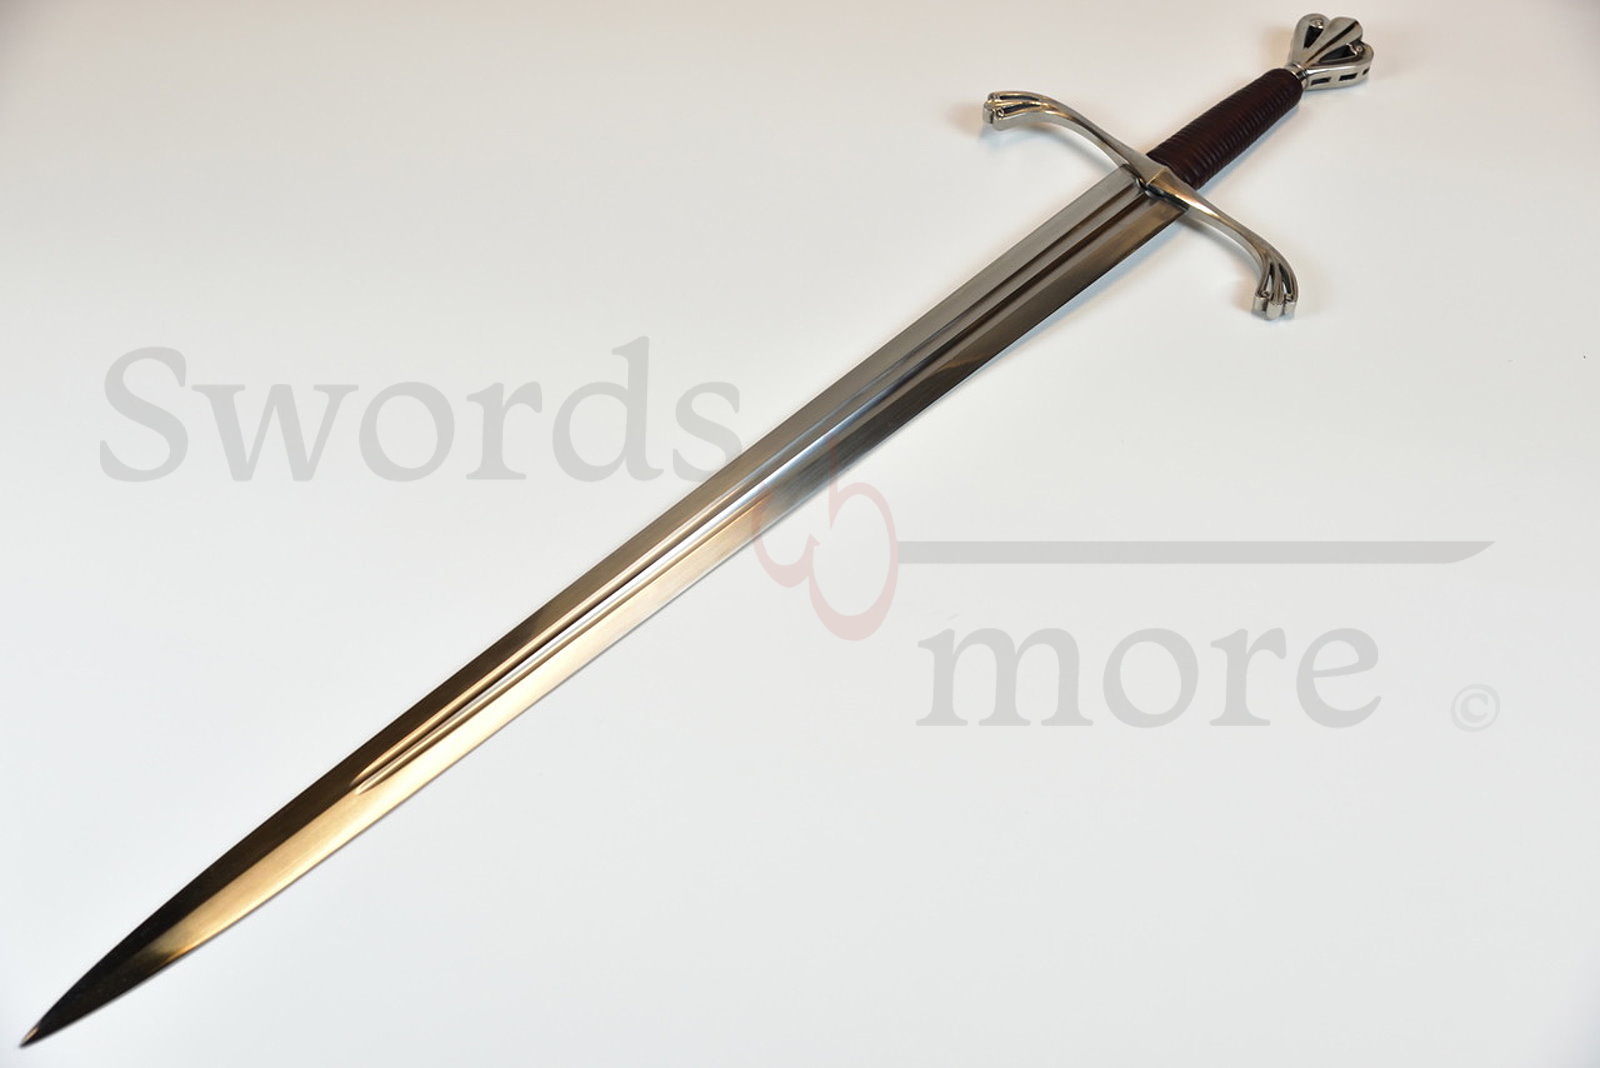 Oakeshott XVI Medieval Sword - The Archduke